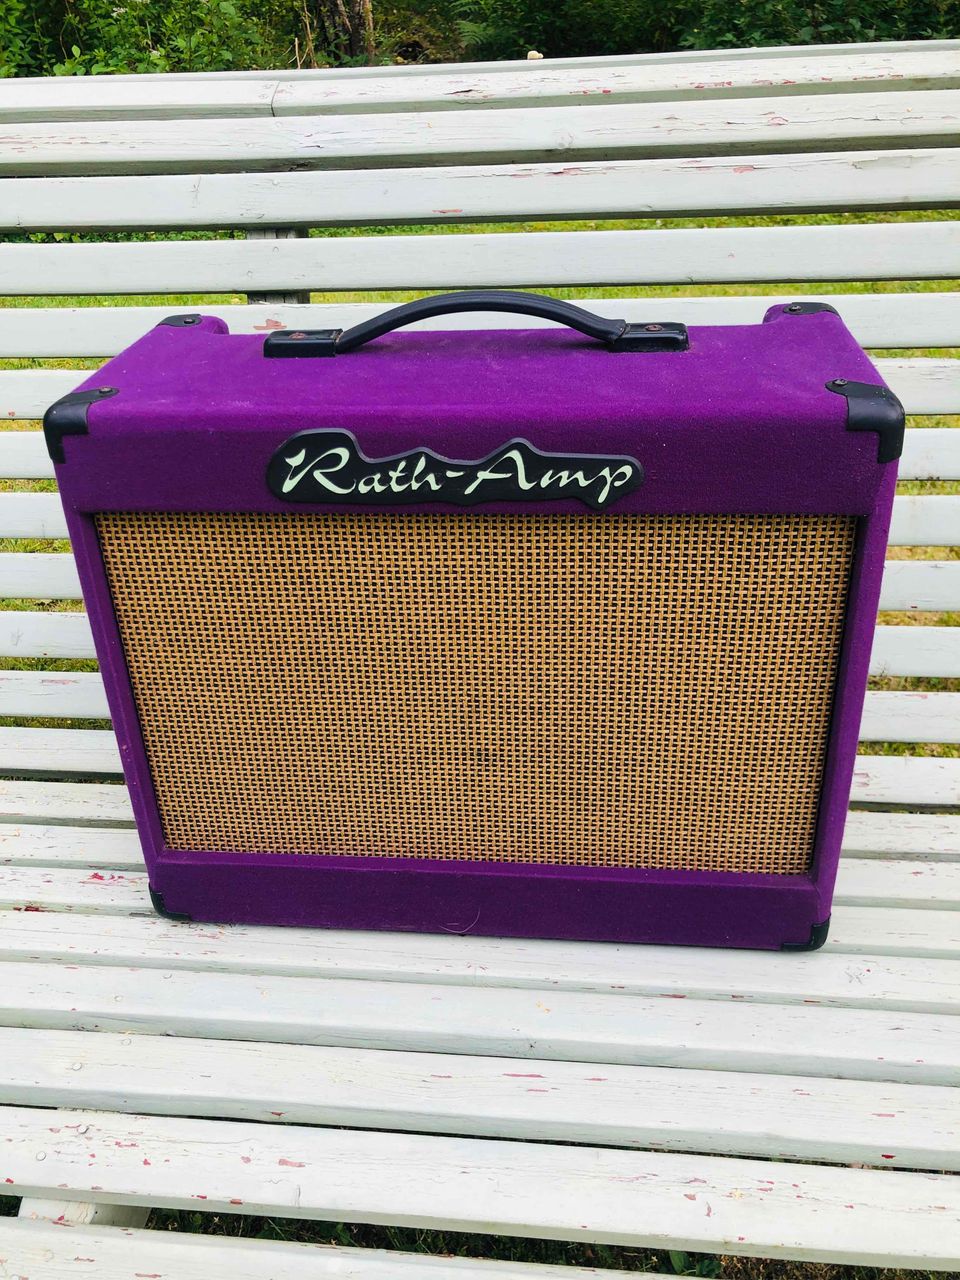 Rath-Amp Retro 20